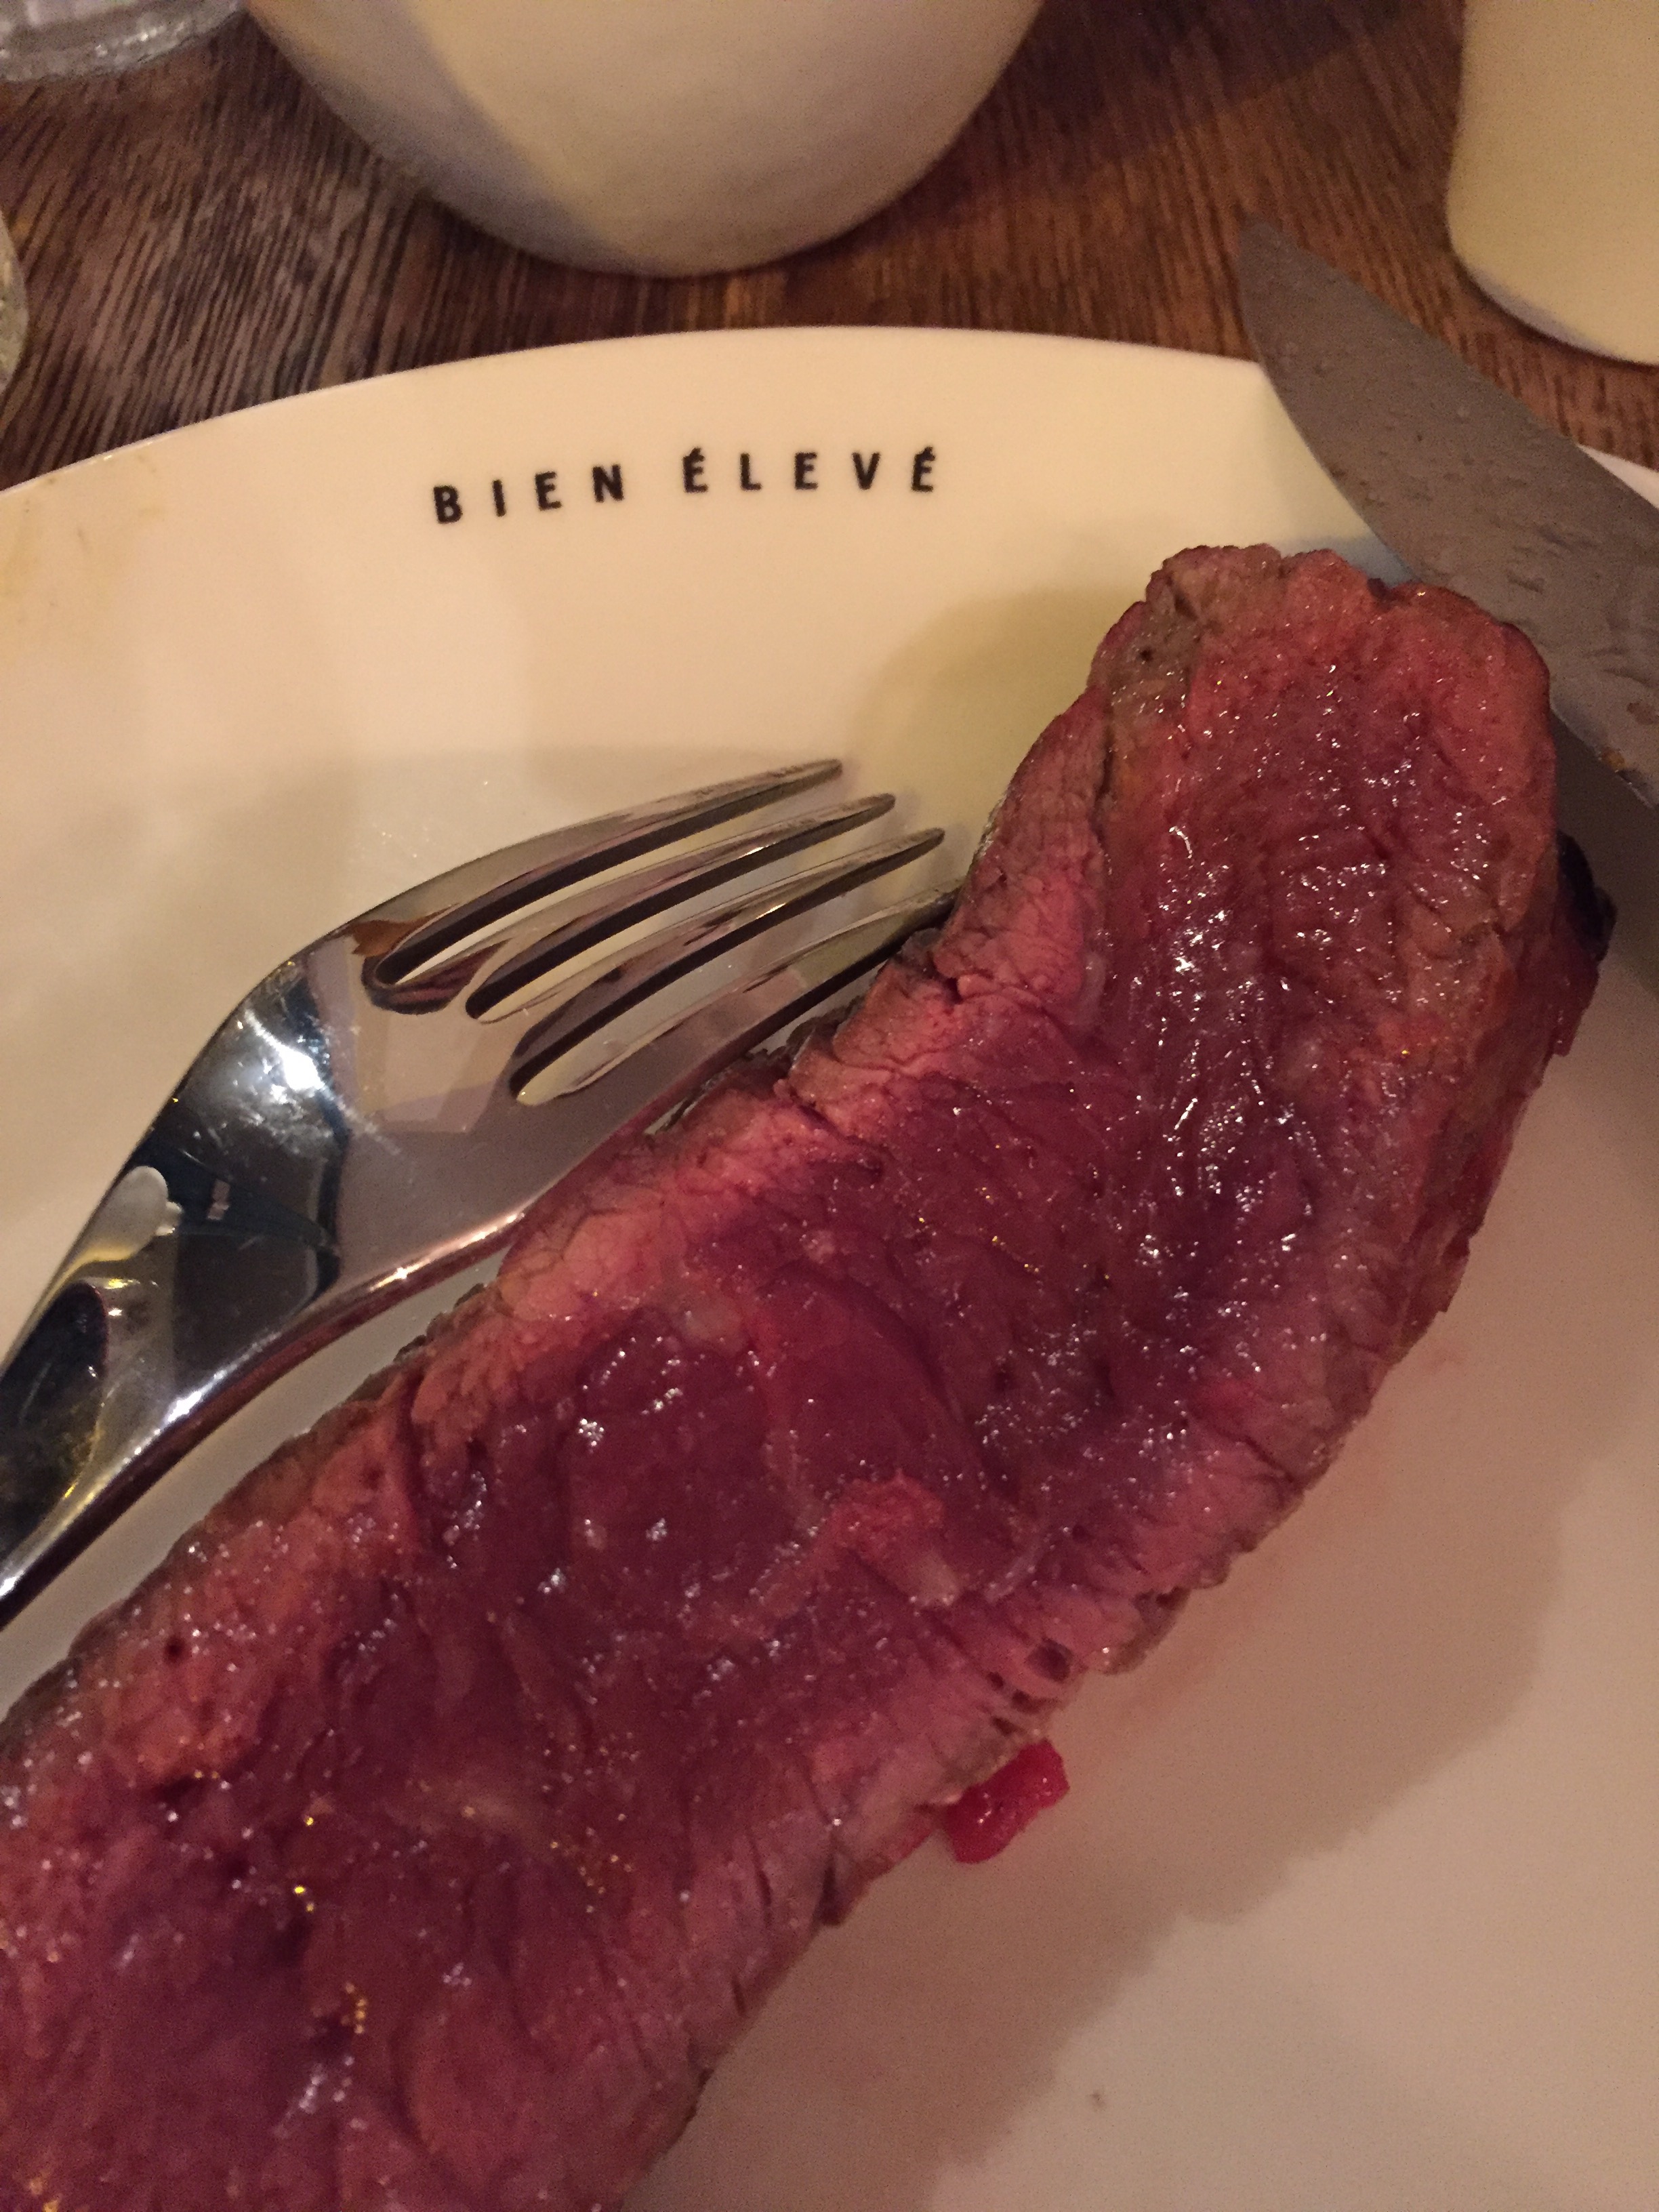 Bien Eleve - steak @ Alexander Lobrano